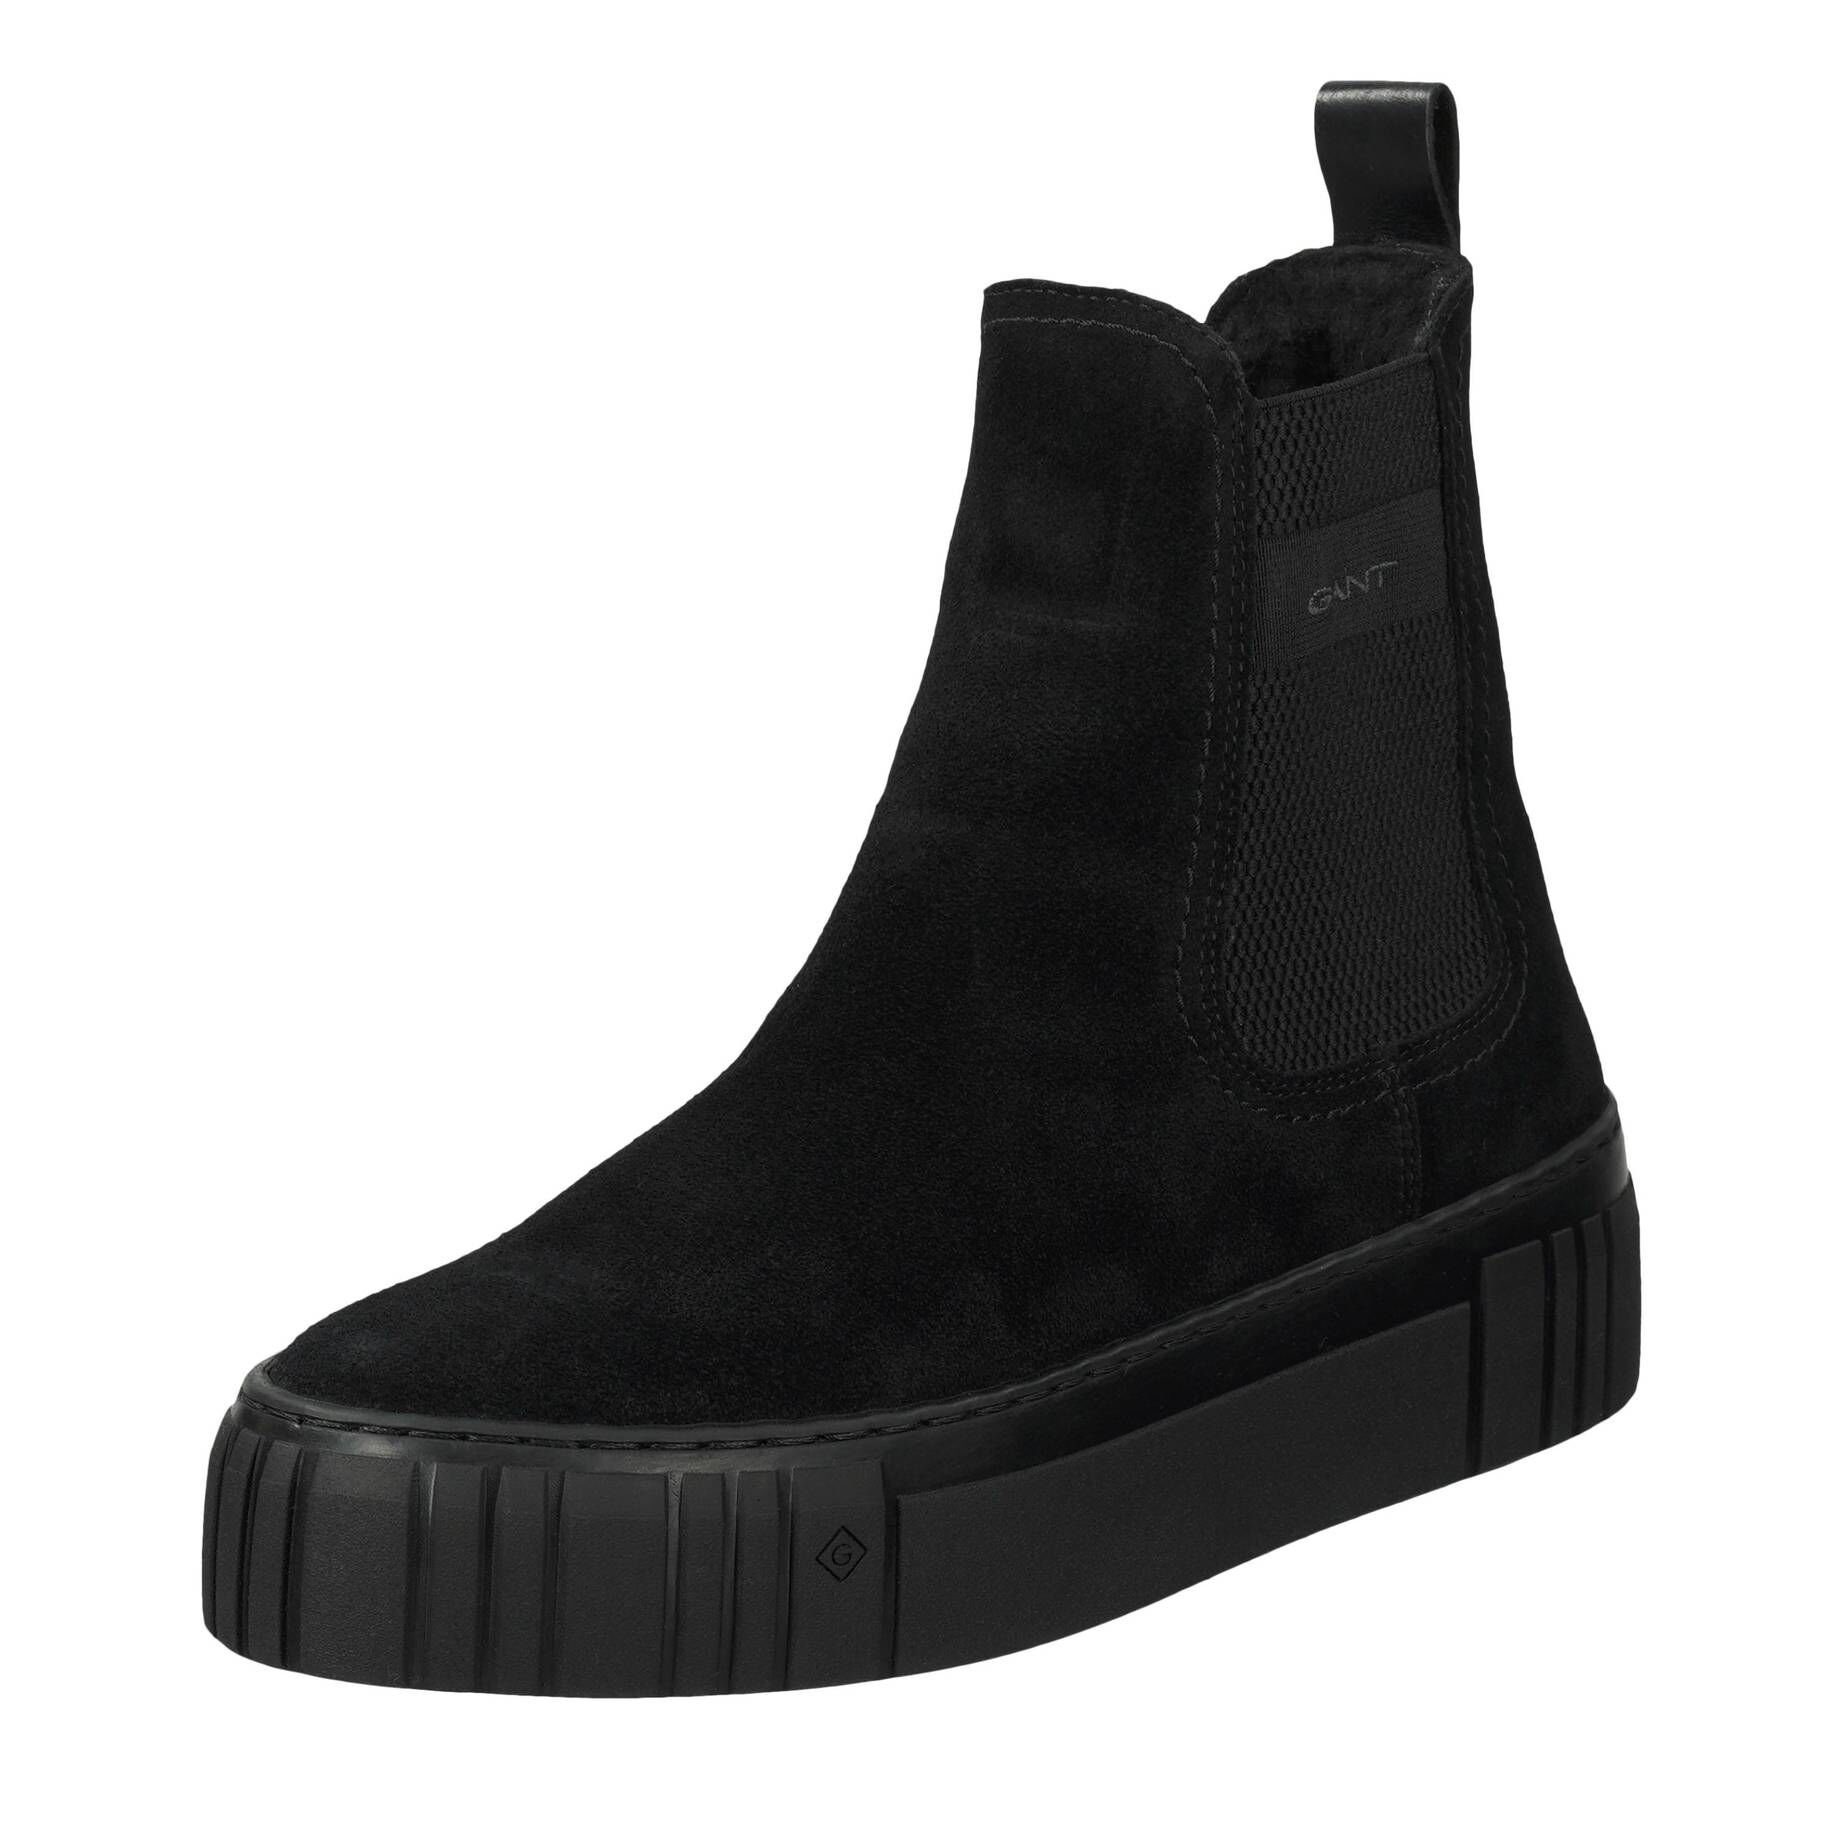 (15) SNOWMONT Damen Stiefel schwarz Chelsea Boots Gant